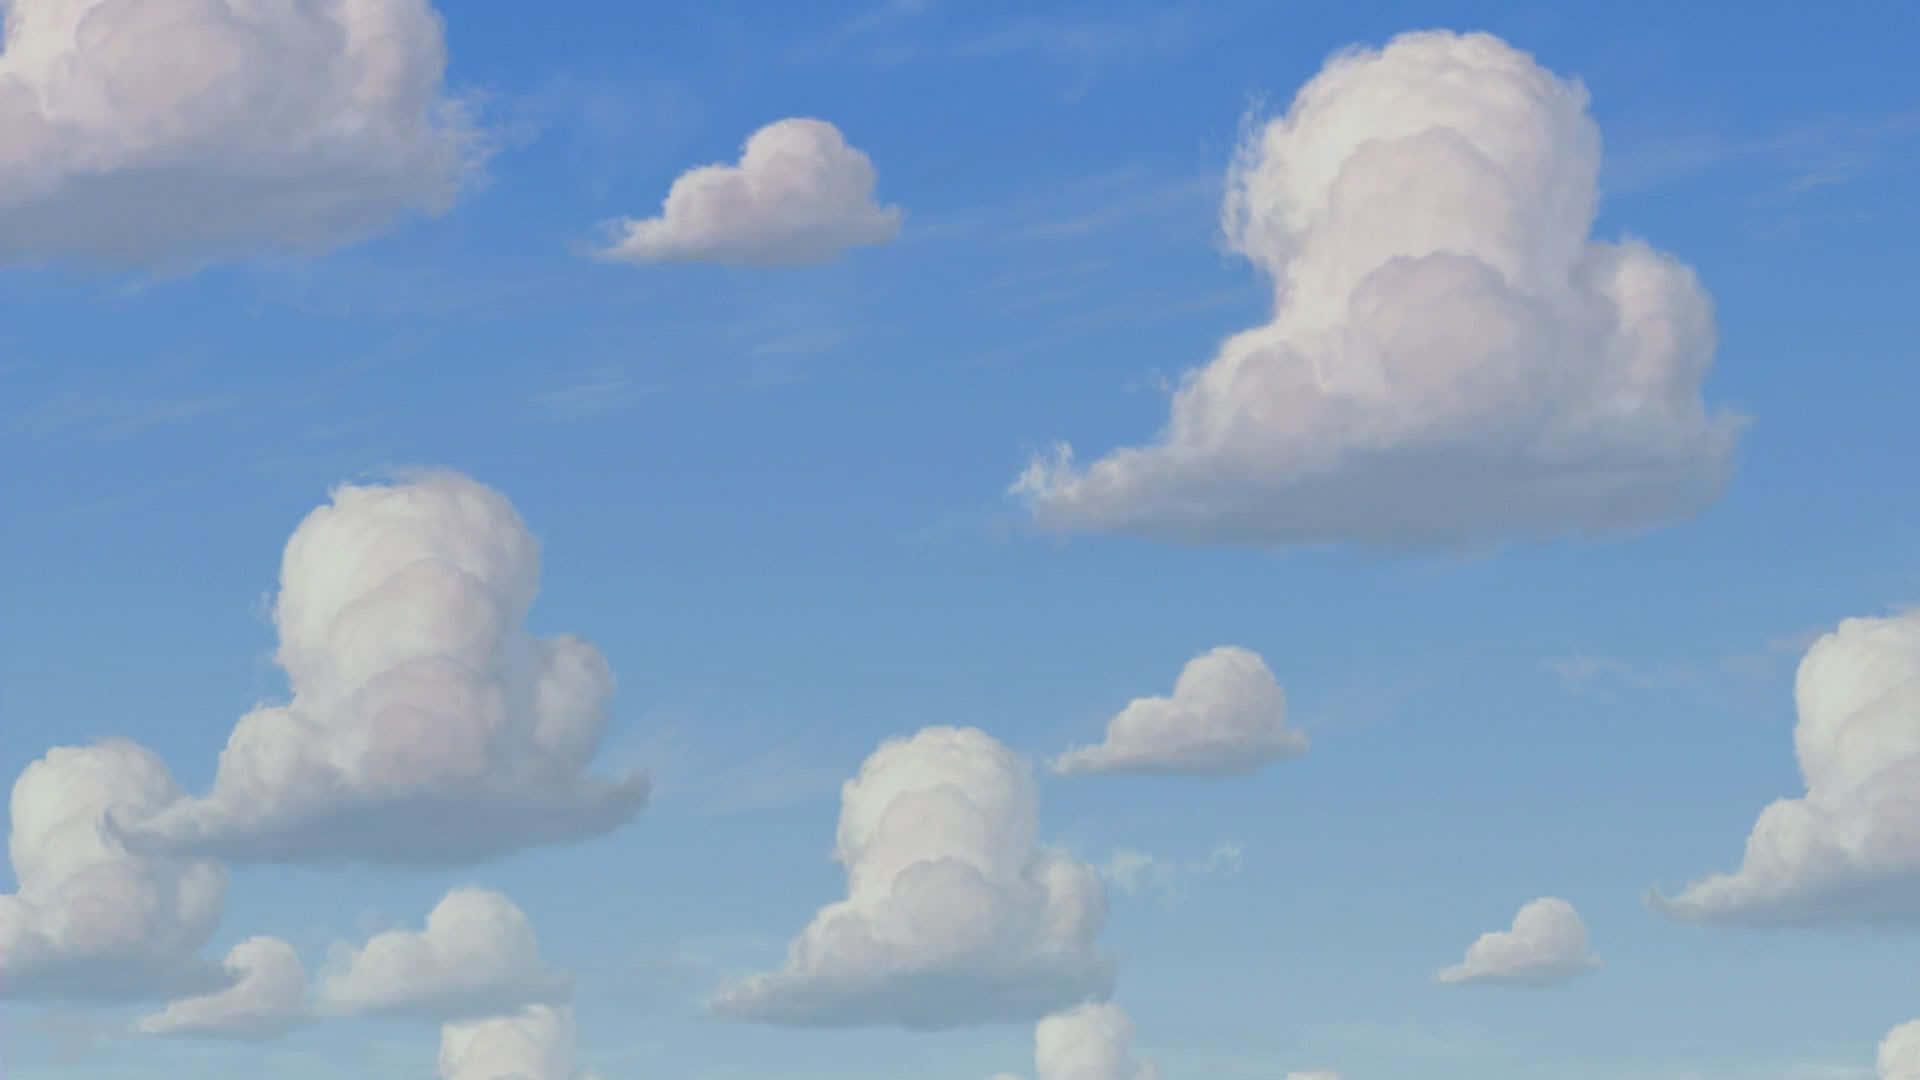 Schauin Den Himmel Und Sieh Einen Traum Wahr Werden - Eine Toy Story Wolke! Wallpaper